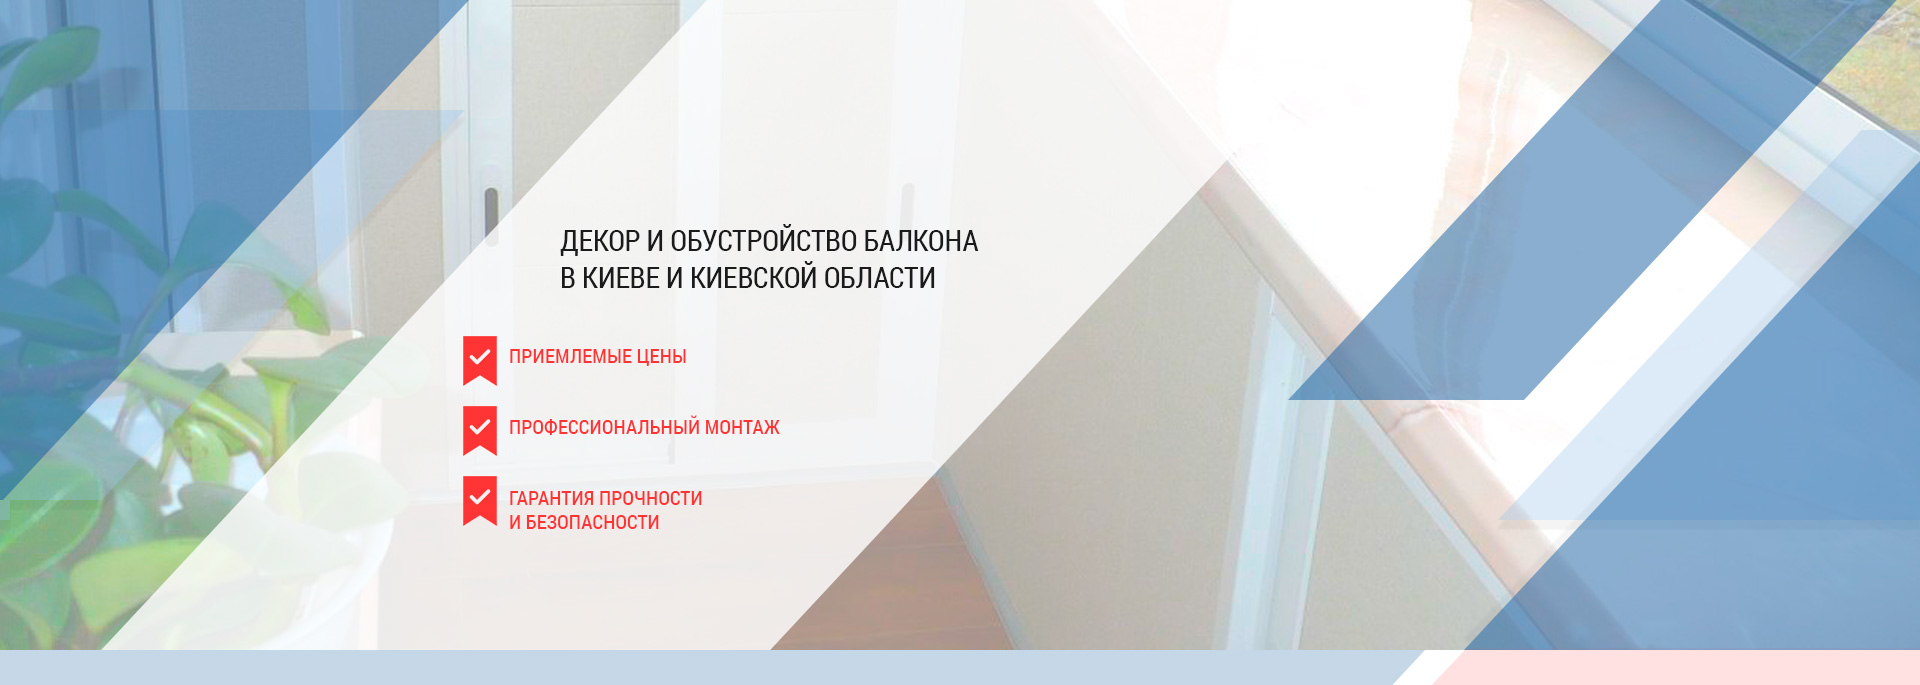 Идеи декора интерьера и обустройства балкона в Киеве